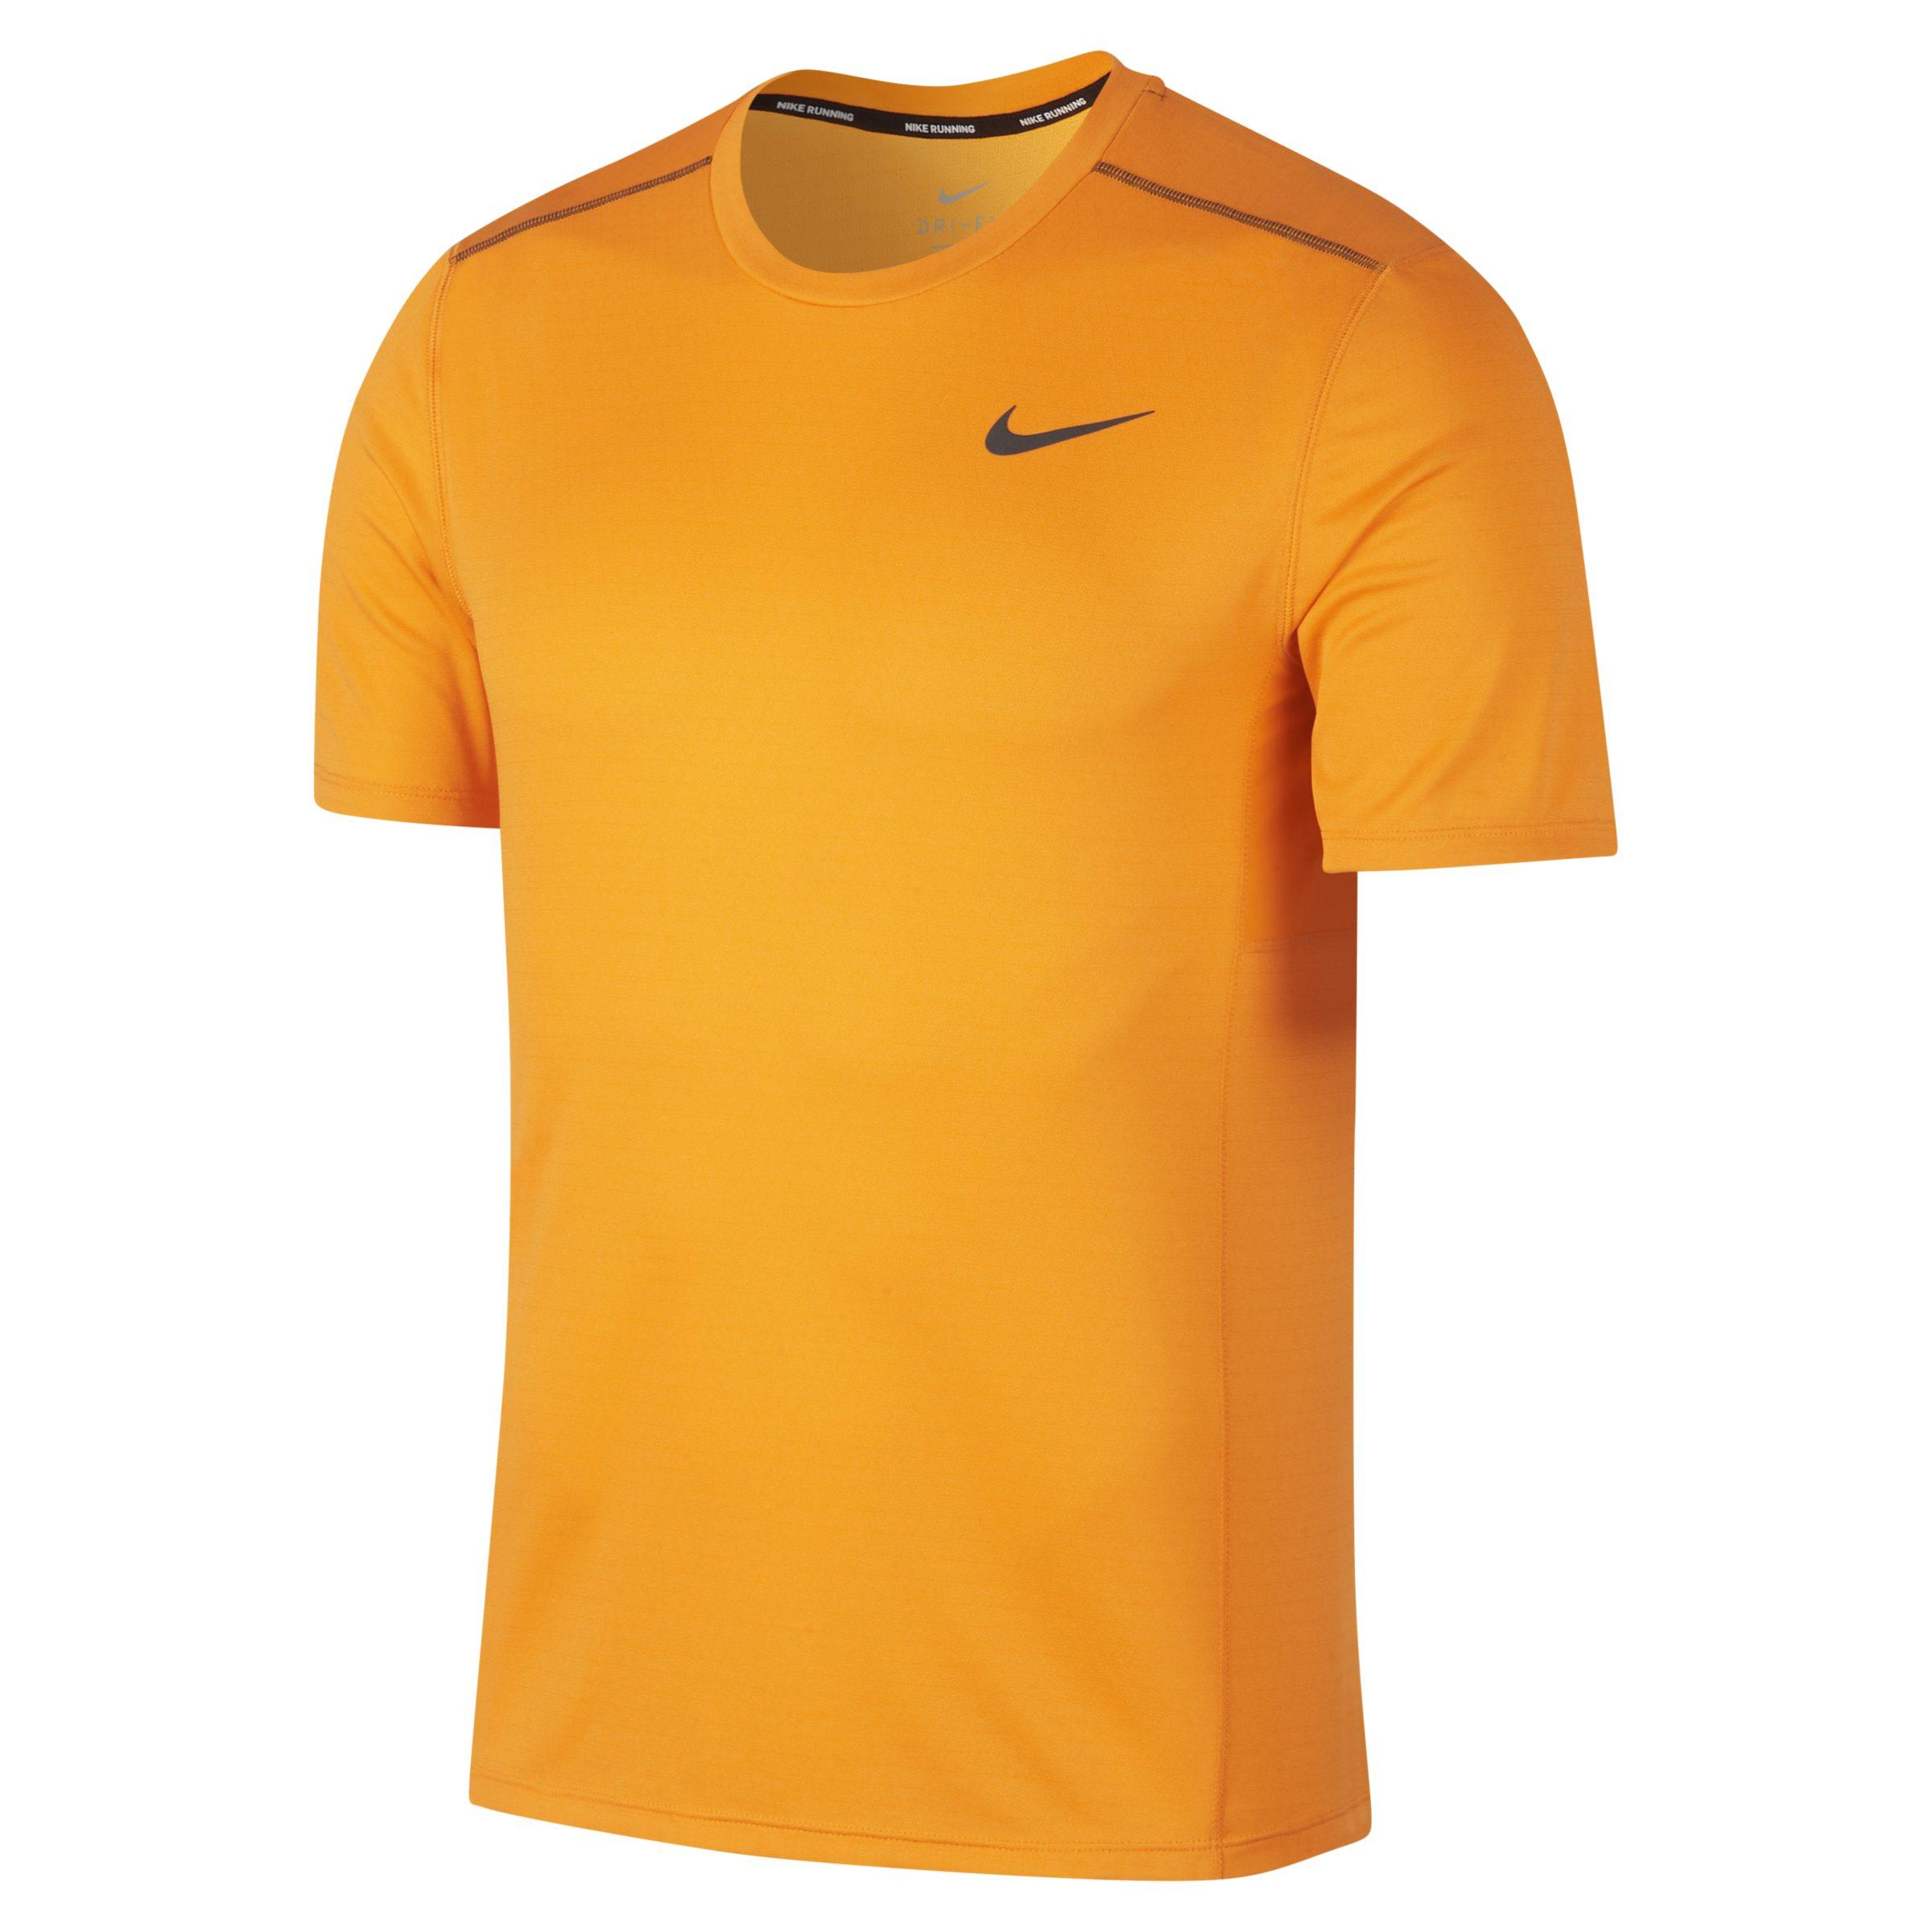 Nike Miler Short-sleeve Running Top in Orange for Men - Lyst